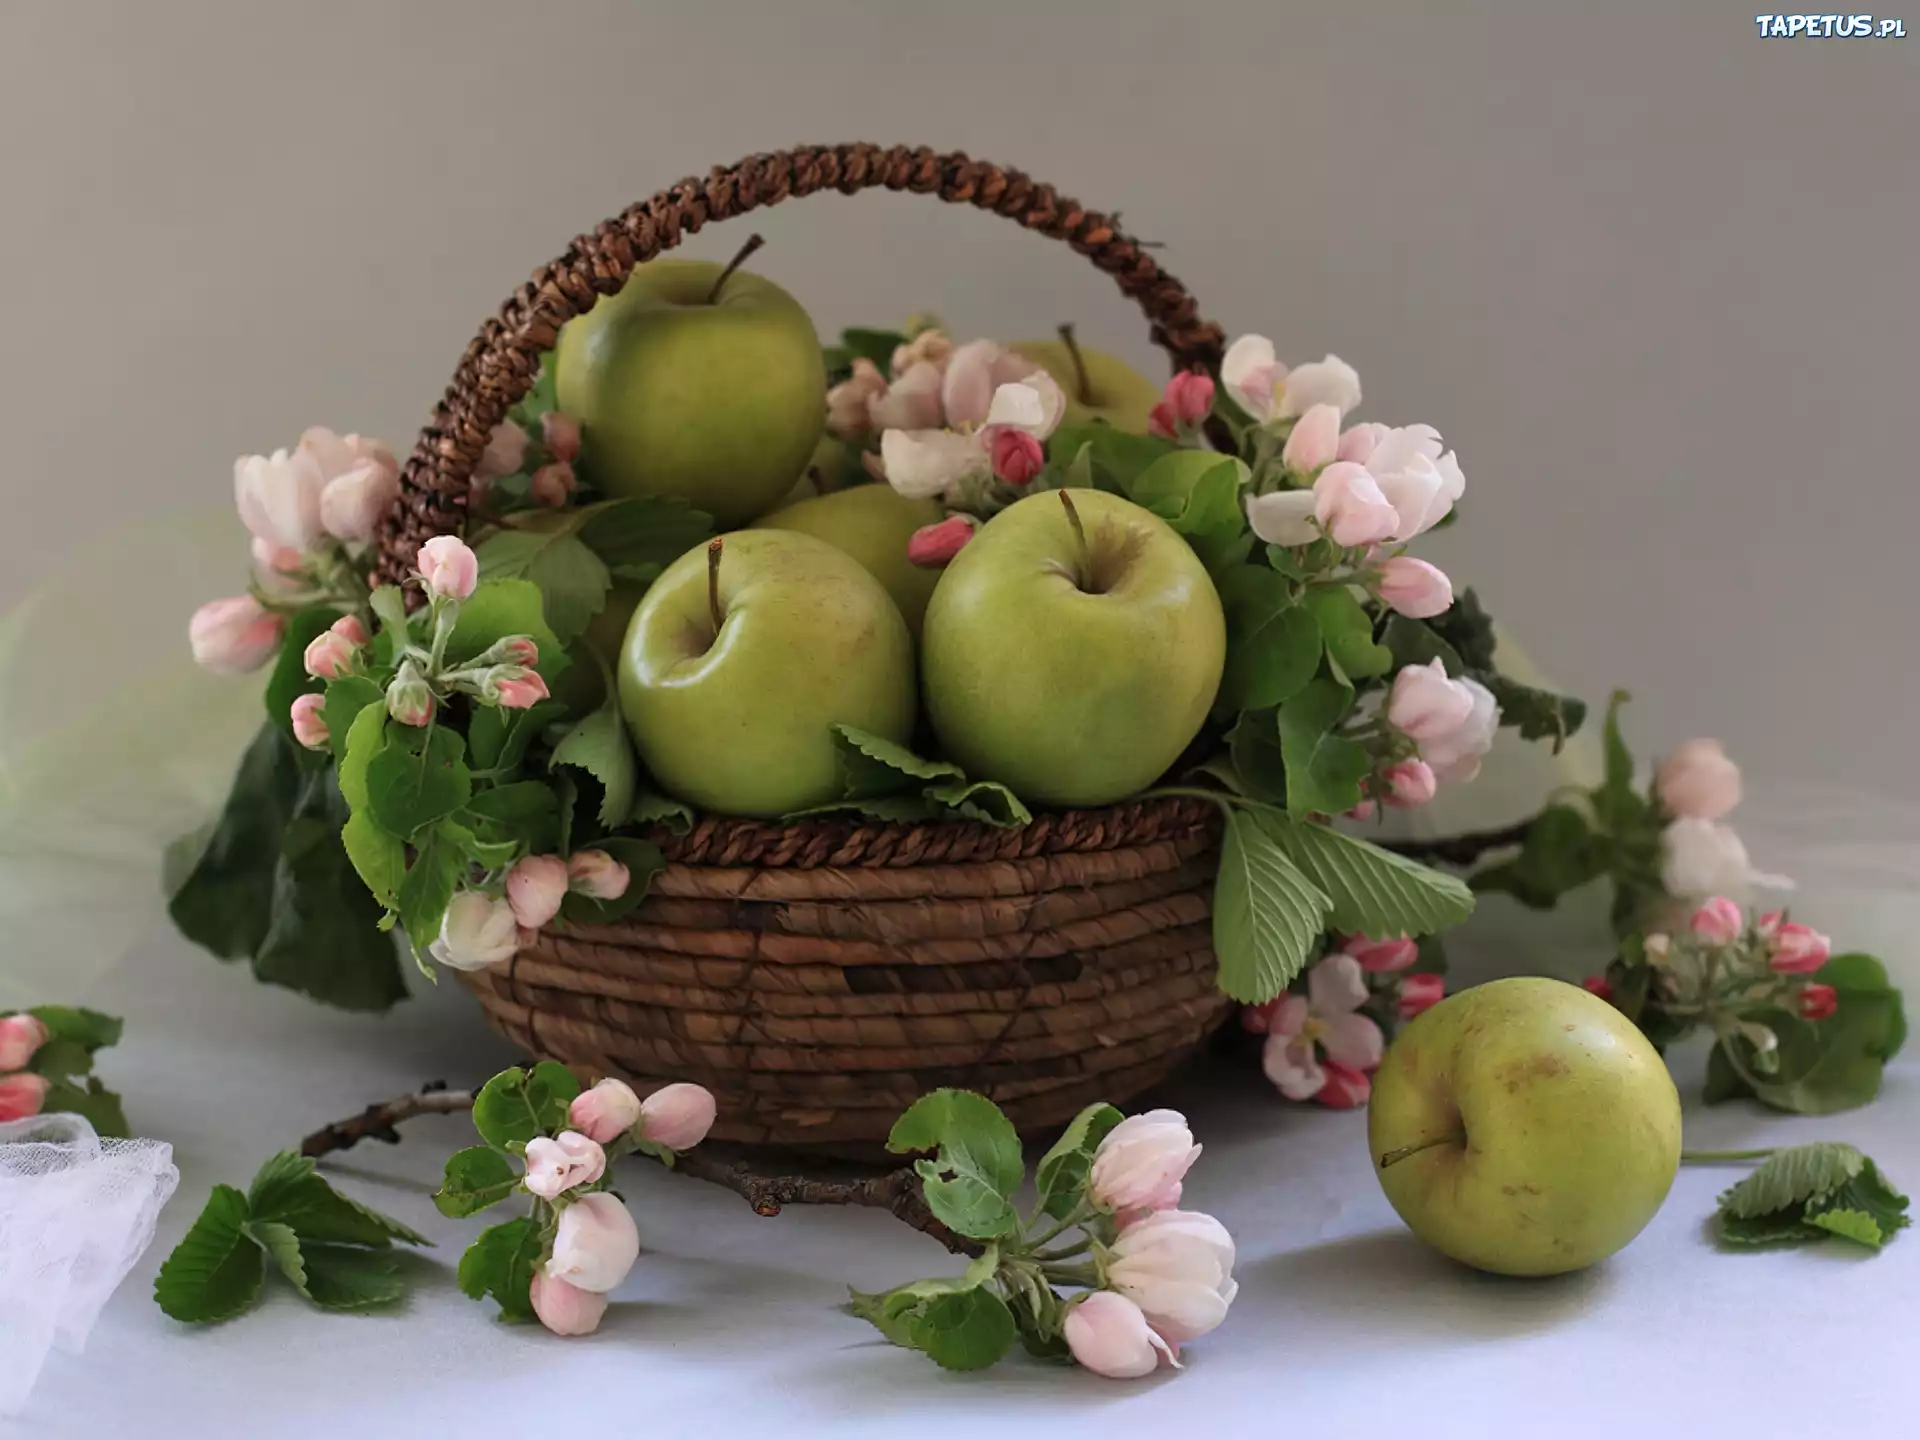 В подарок получить яблоки. Фотонатюрморты Натальи Панга. Натюрморт с цветами и фруктами. Натюрморт ваза с фруктами. Красивые натюрморты с цветами и фруктами.